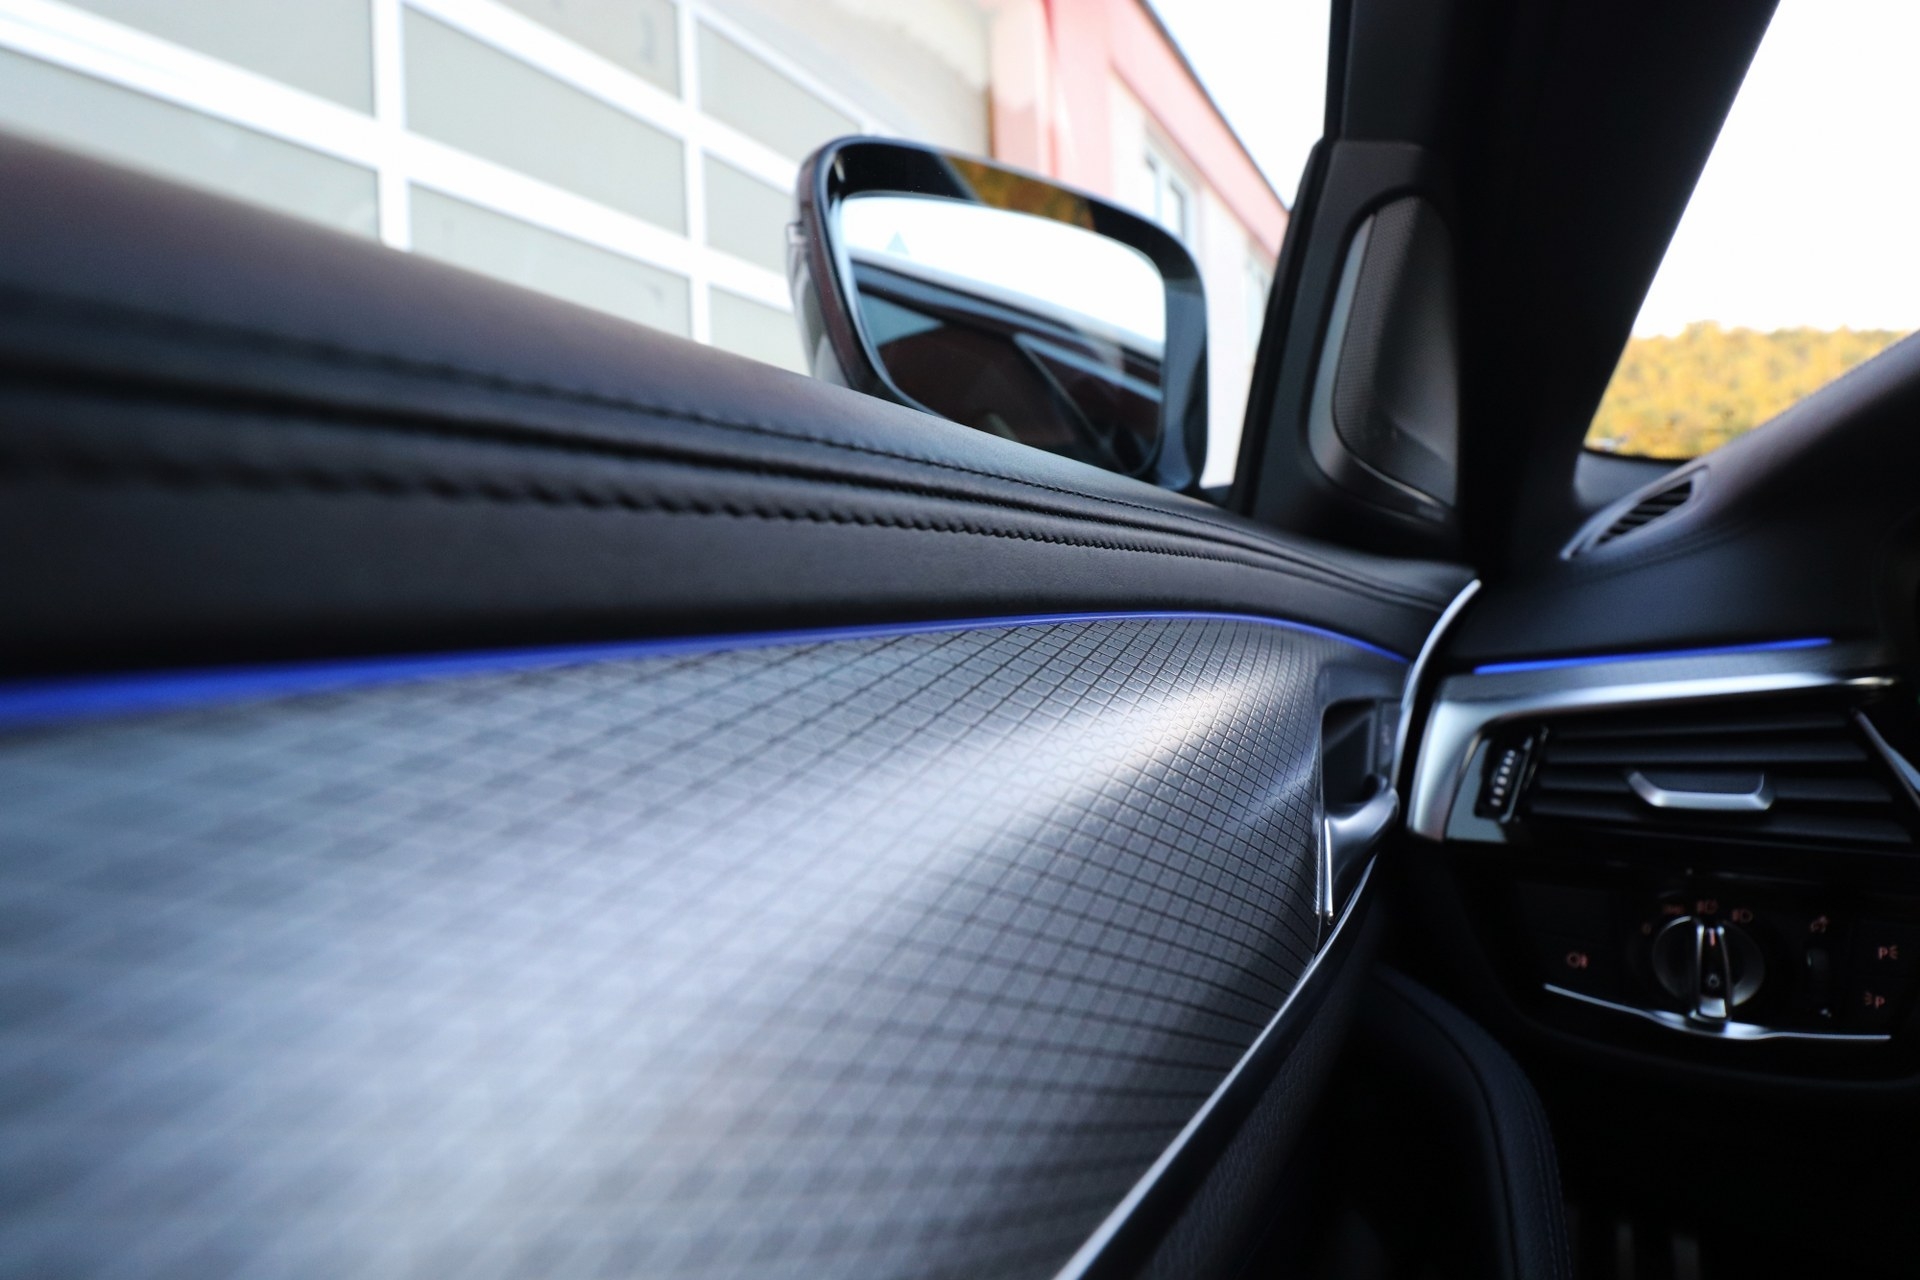 BMW M550 D G30 xDrive 4x4 QUADRI TURBO M-PERFORMANCE Motorsport Black Edition 400 KS Laser Licht ACC-System 3D View Kamera 360° -New Modell 2018- MAX-VOLL